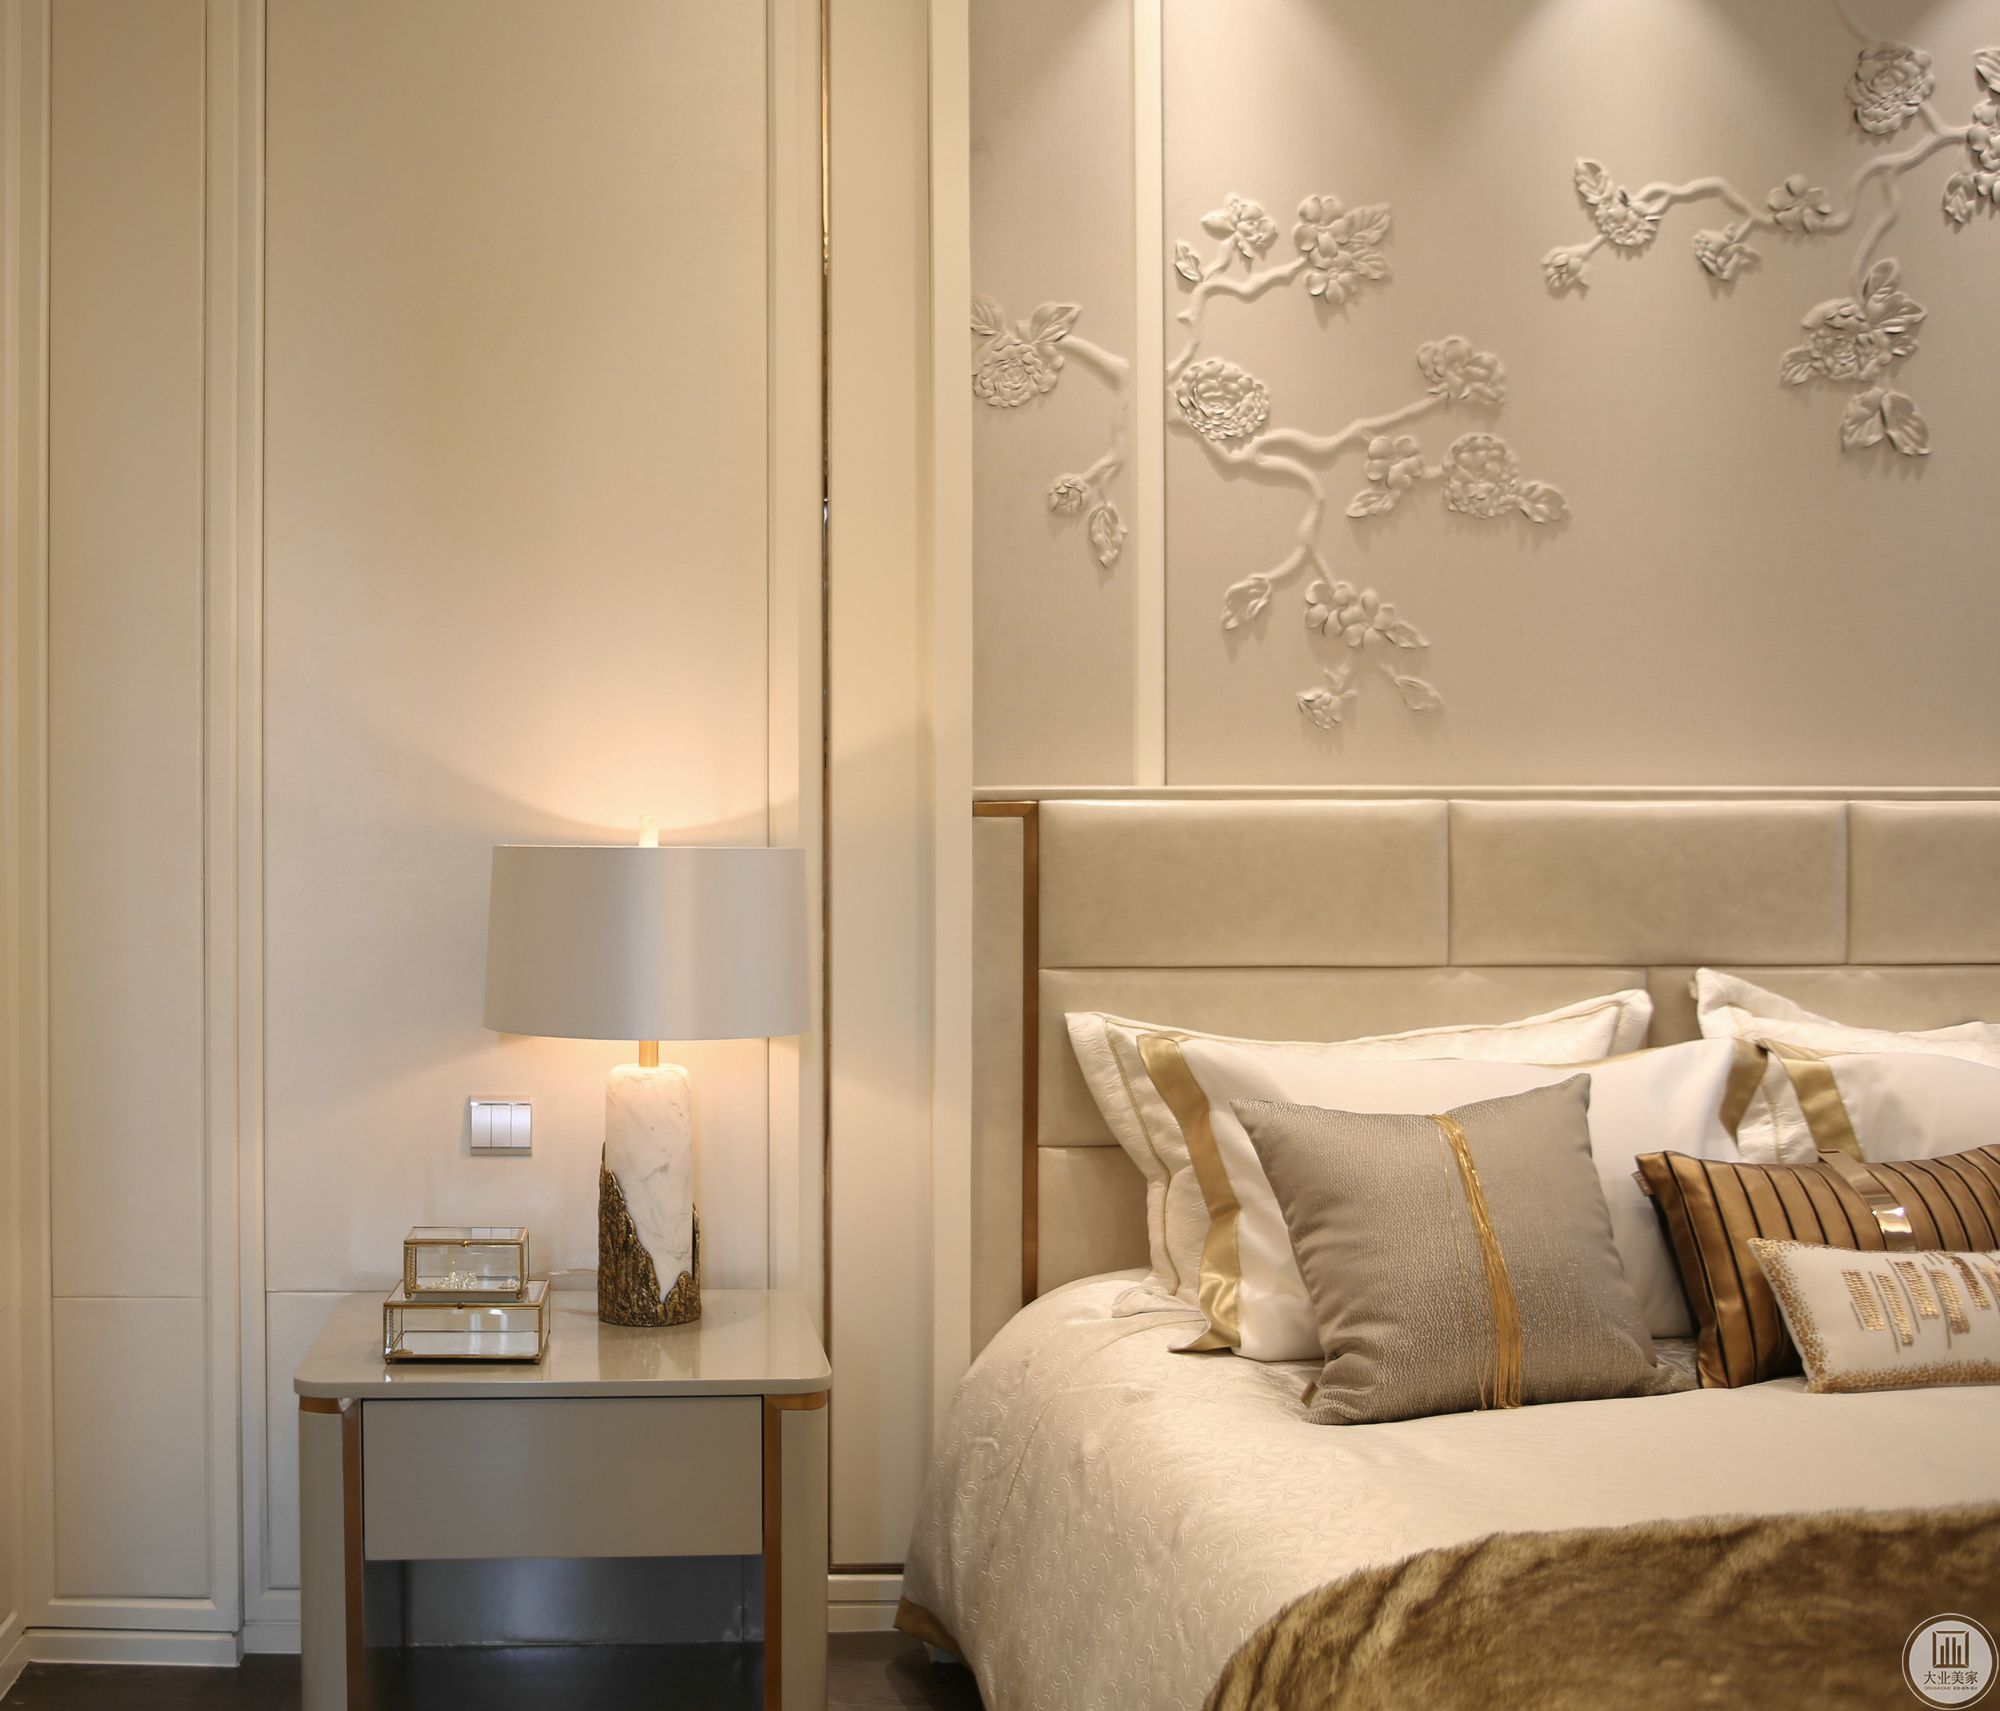 主卧背景墙选择了精致淡雅的花鸟画浮雕，以达到和客厅融合贯通的作用，舒适奢华之感表达非常完善。